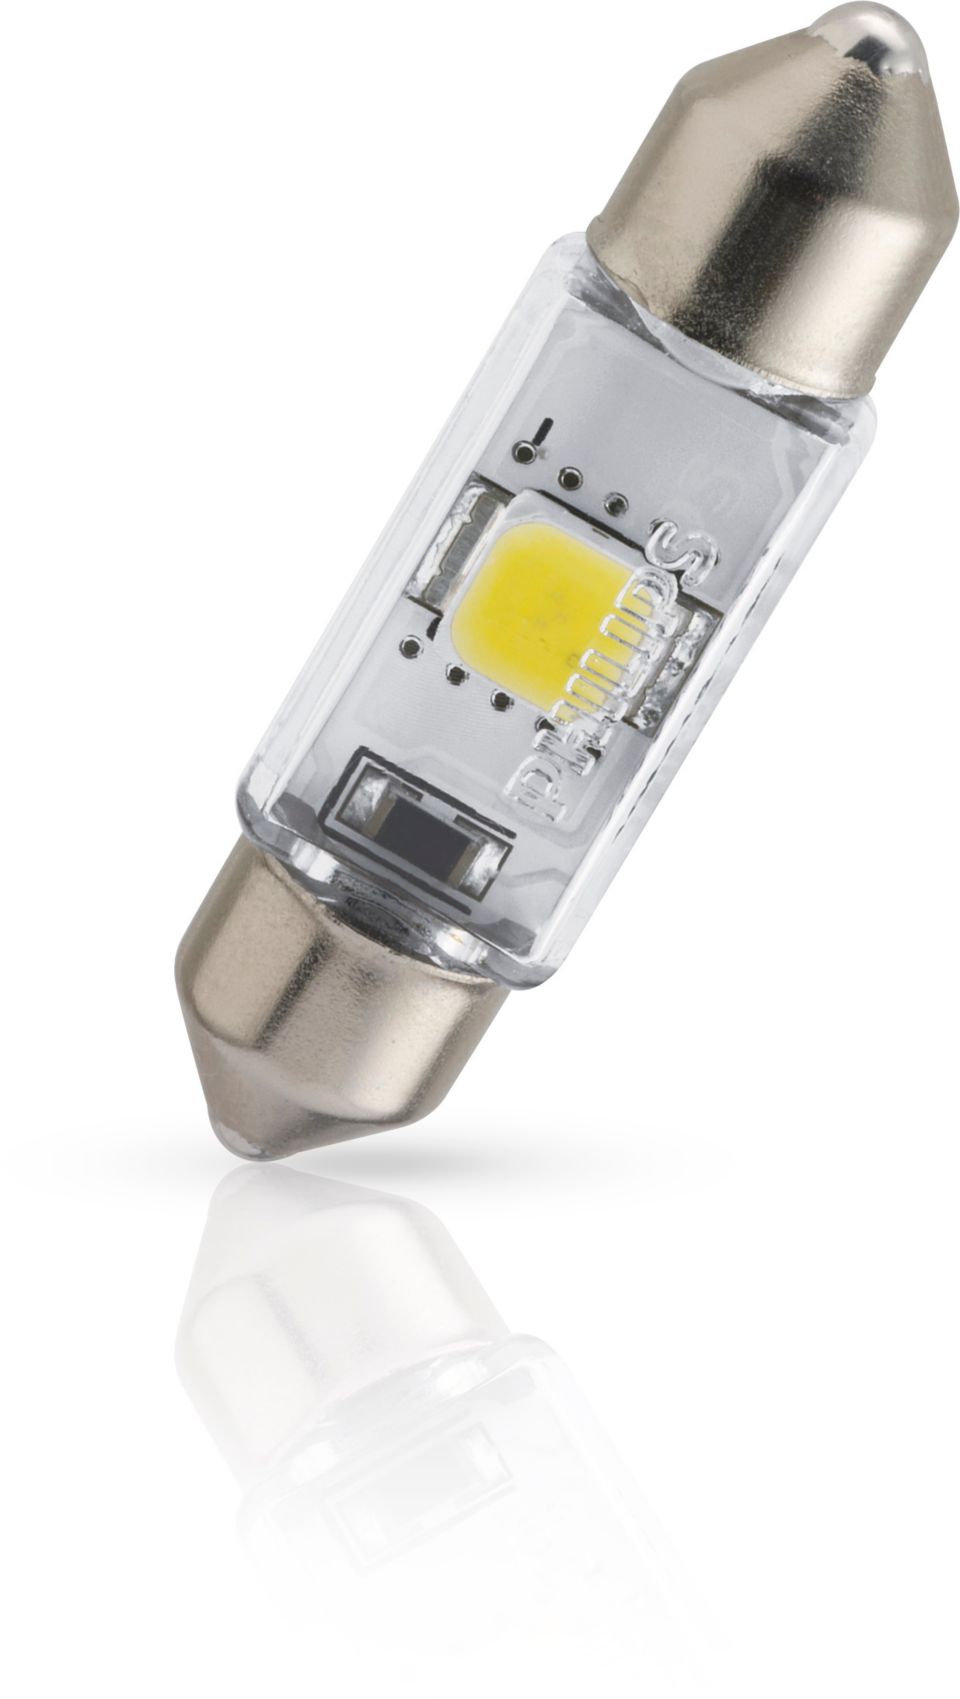 X-tremeUltinon LED Lampe de signalisation et d'intérieur 128596000KX1